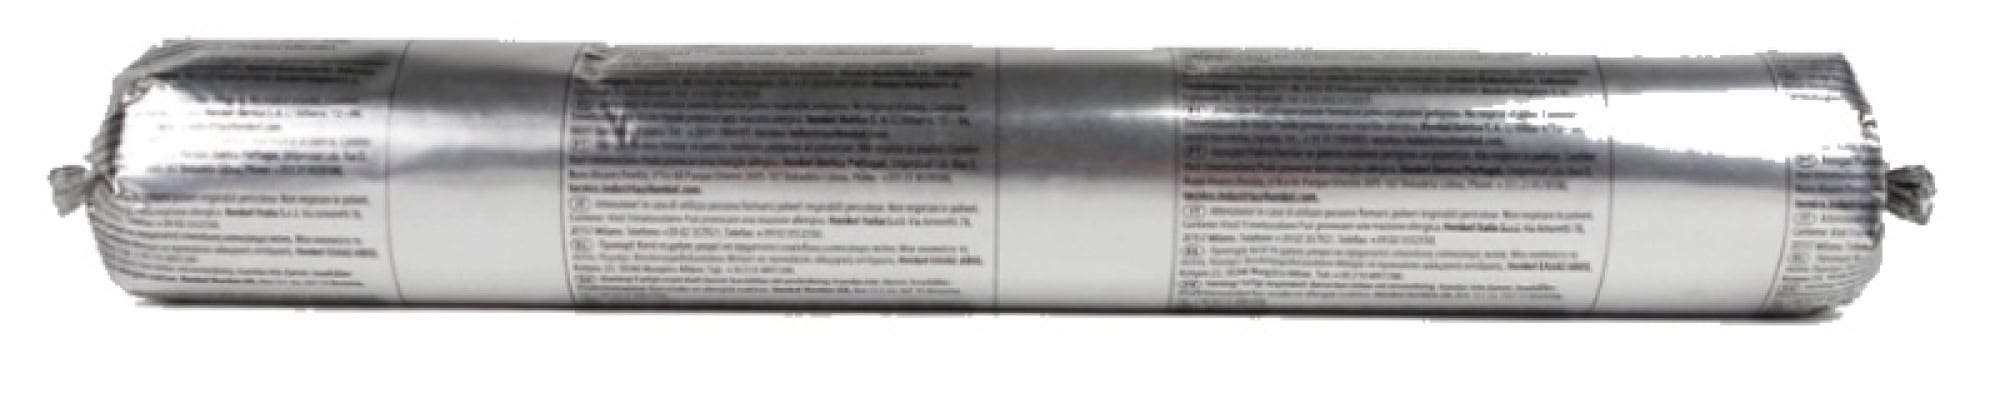 Henkel™ Teroson® Silanmodifizierter Polymer Kleb-/Dichtstoff  MS 939, 570 ml Folienbeutel, Schwarz, Thixotrop, 1K, 2436359, Für mechanische Sicherheit